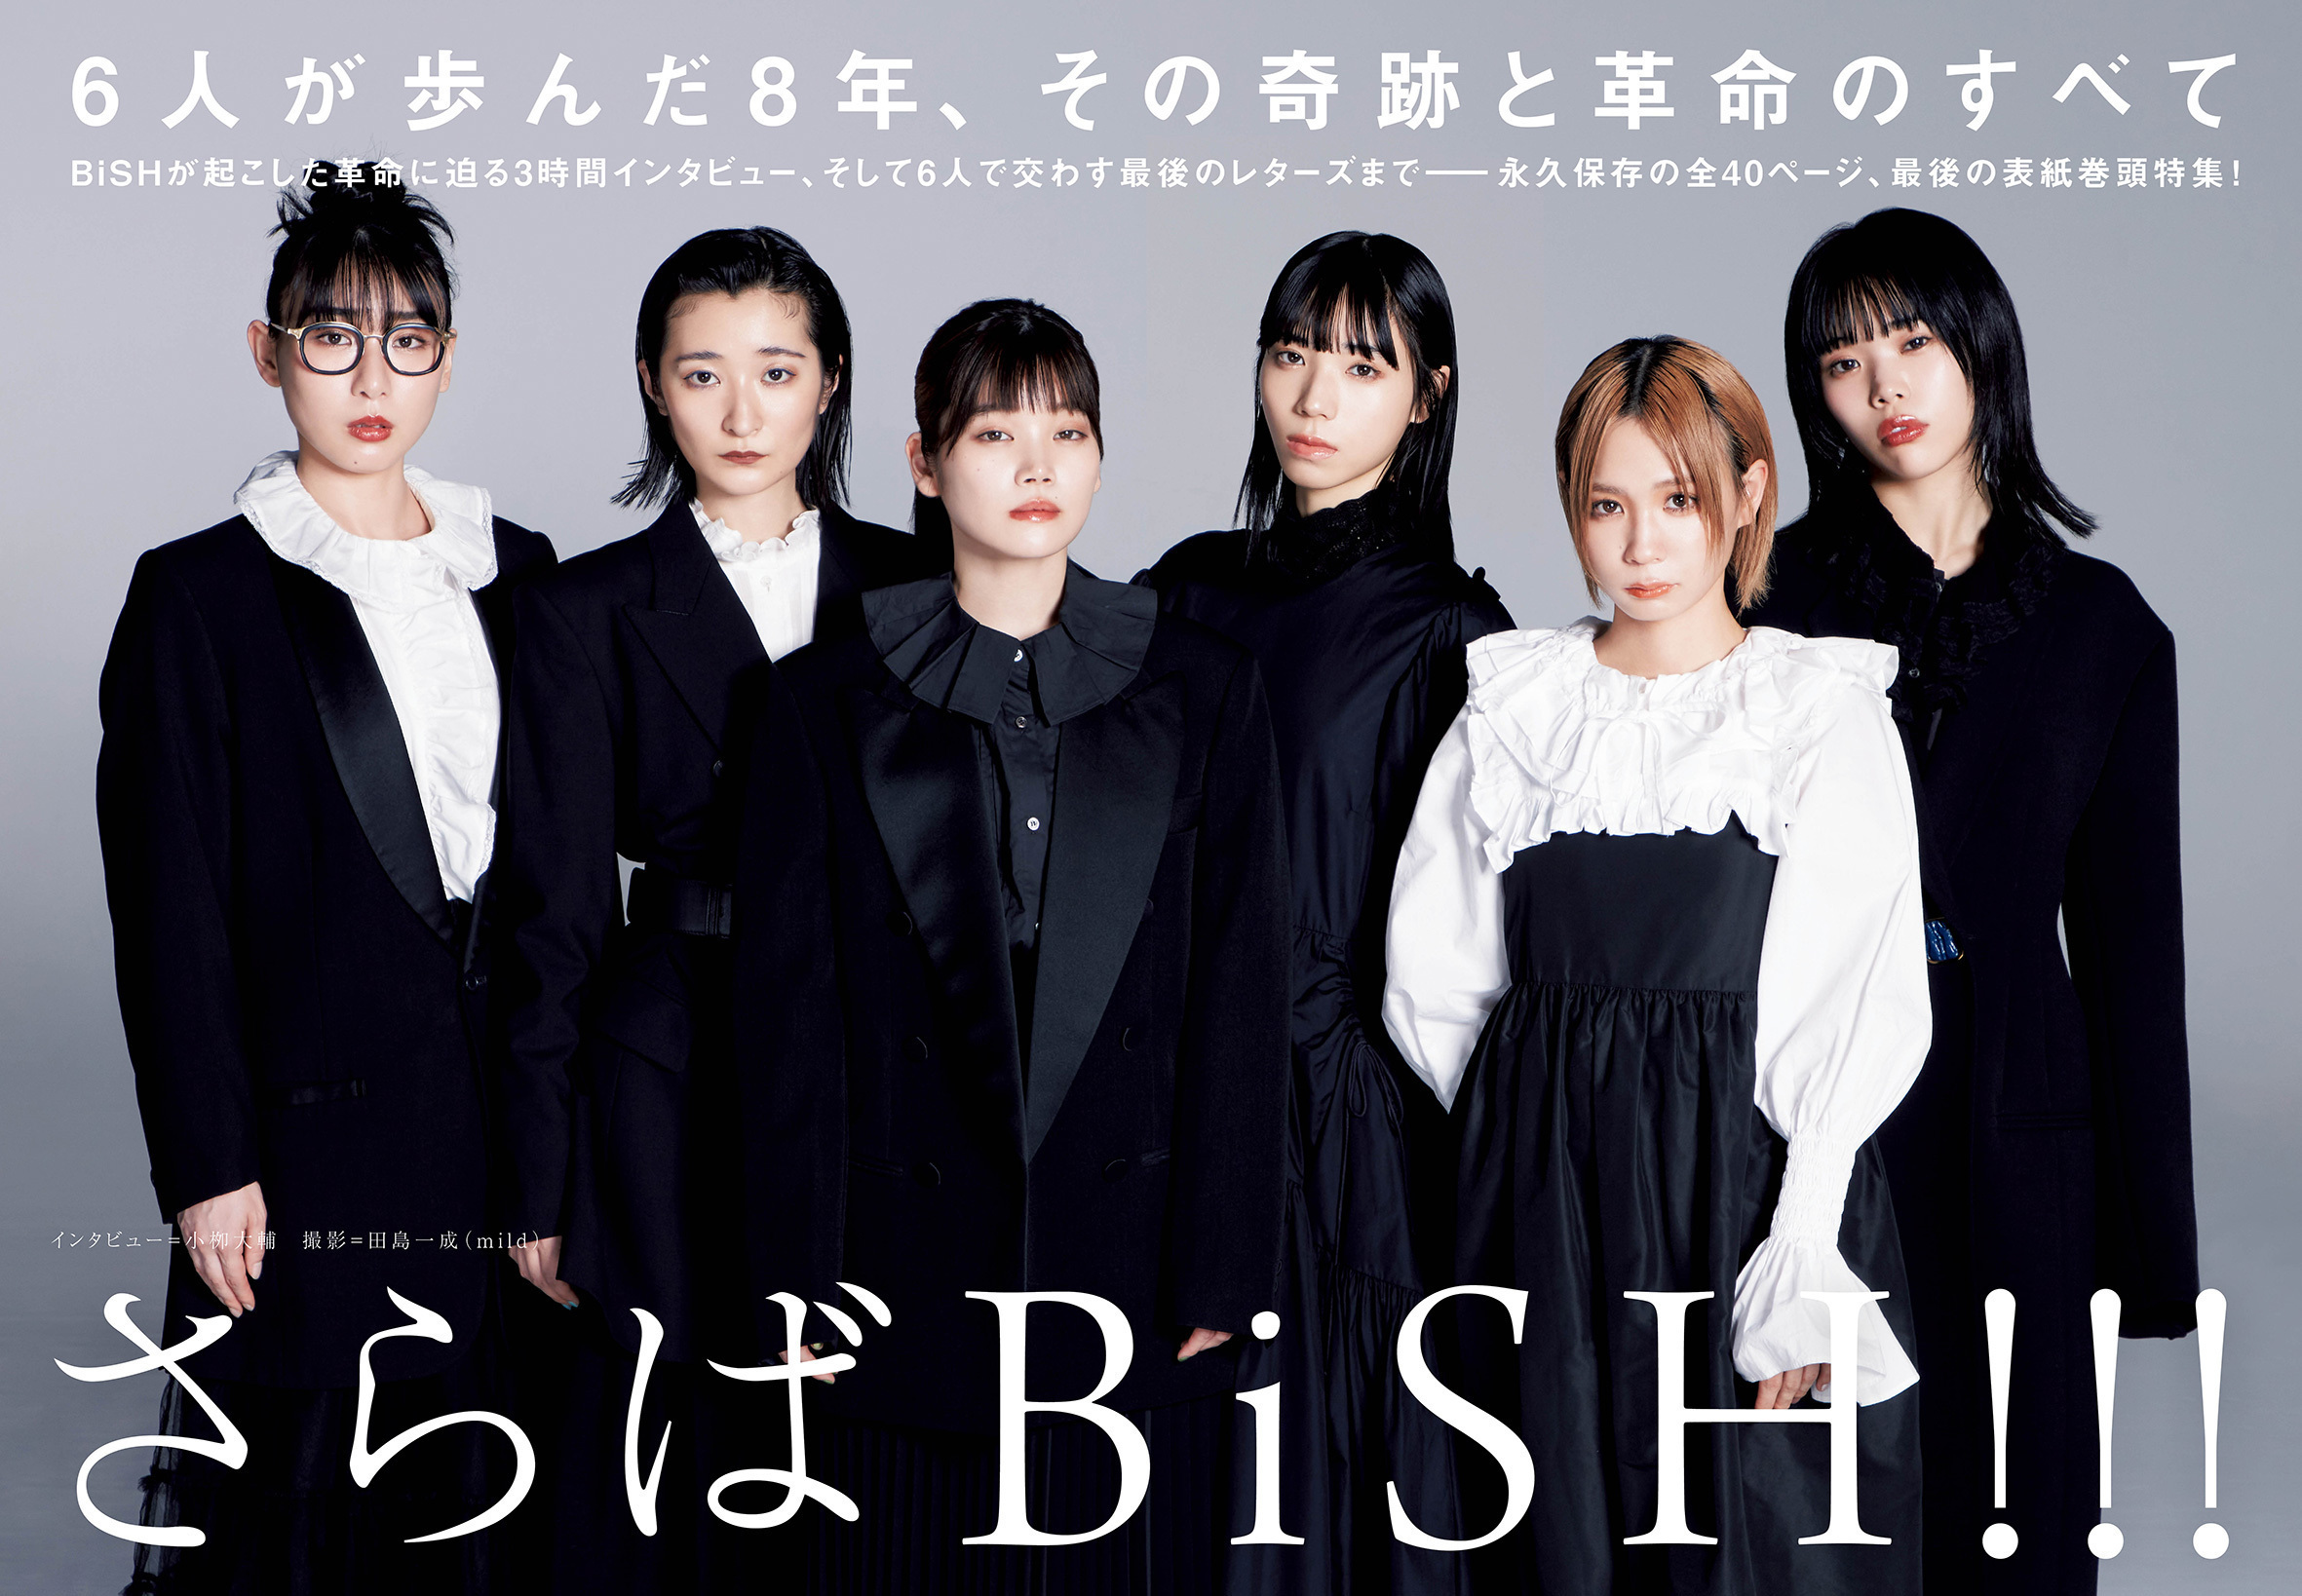 【JAPAN最新号】さらばBiSH!!! 6人が歩んだ8年、その奇跡と革命のすべて。BiSHが起こした革命に迫る3時間インタビュー、そして6人で交わす最後のレターズまで――永久保存の全40ページ、最後の表紙巻頭特集！